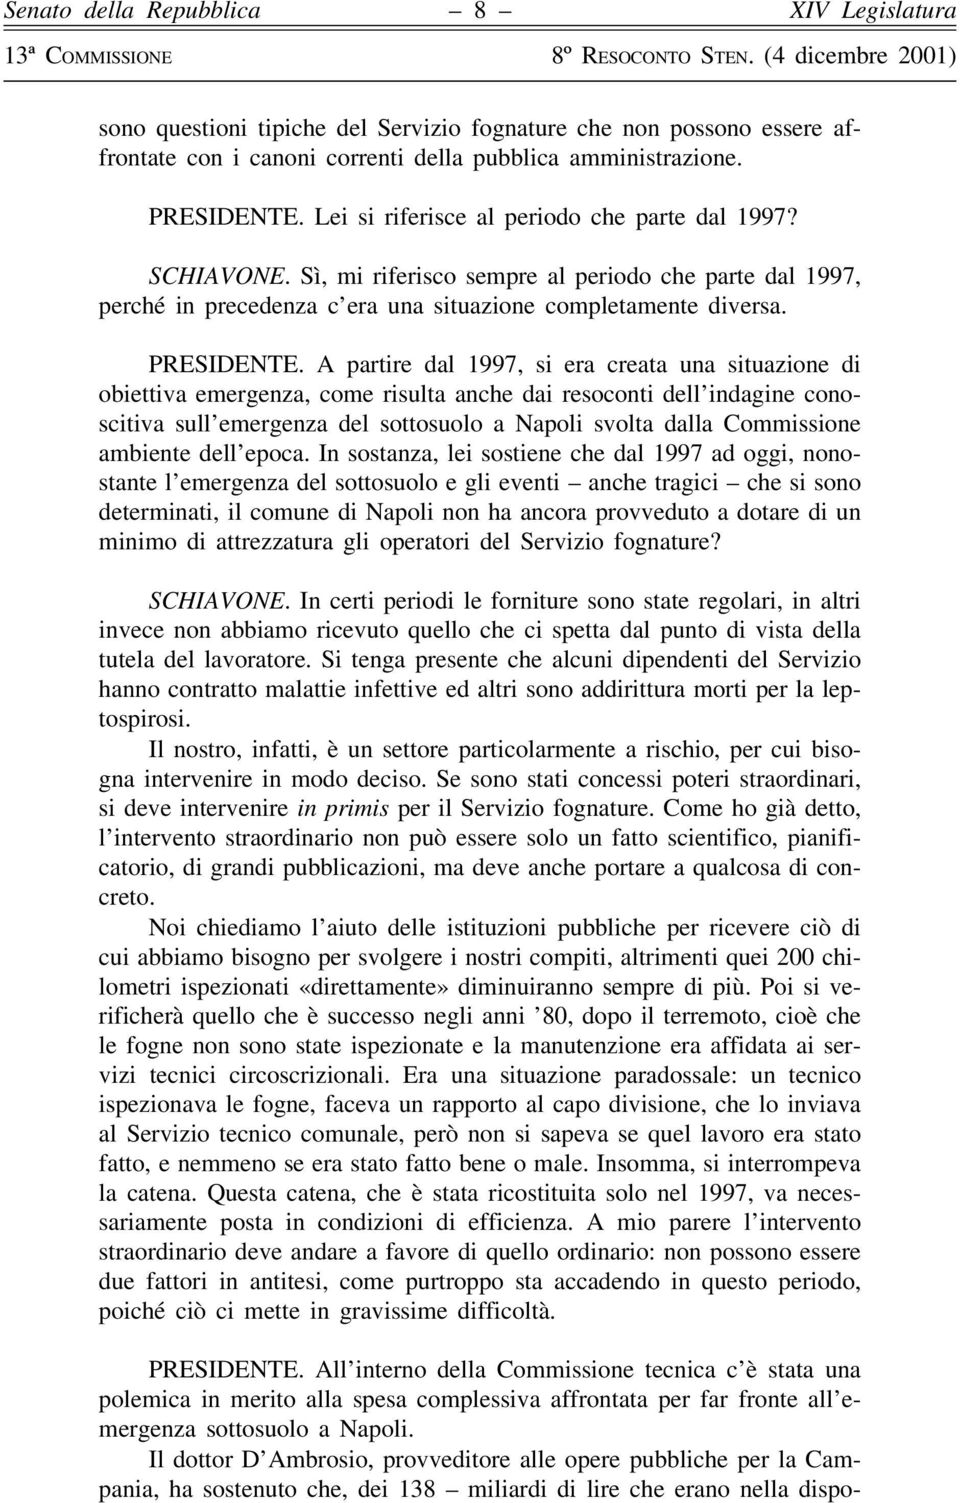 A partire dal 1997, si era creata una situazione di obiettiva emergenza, come risulta anche dai resoconti dell'indagine conoscitiva sull'emergenza del sottosuolo a Napoli svolta dalla Commissione